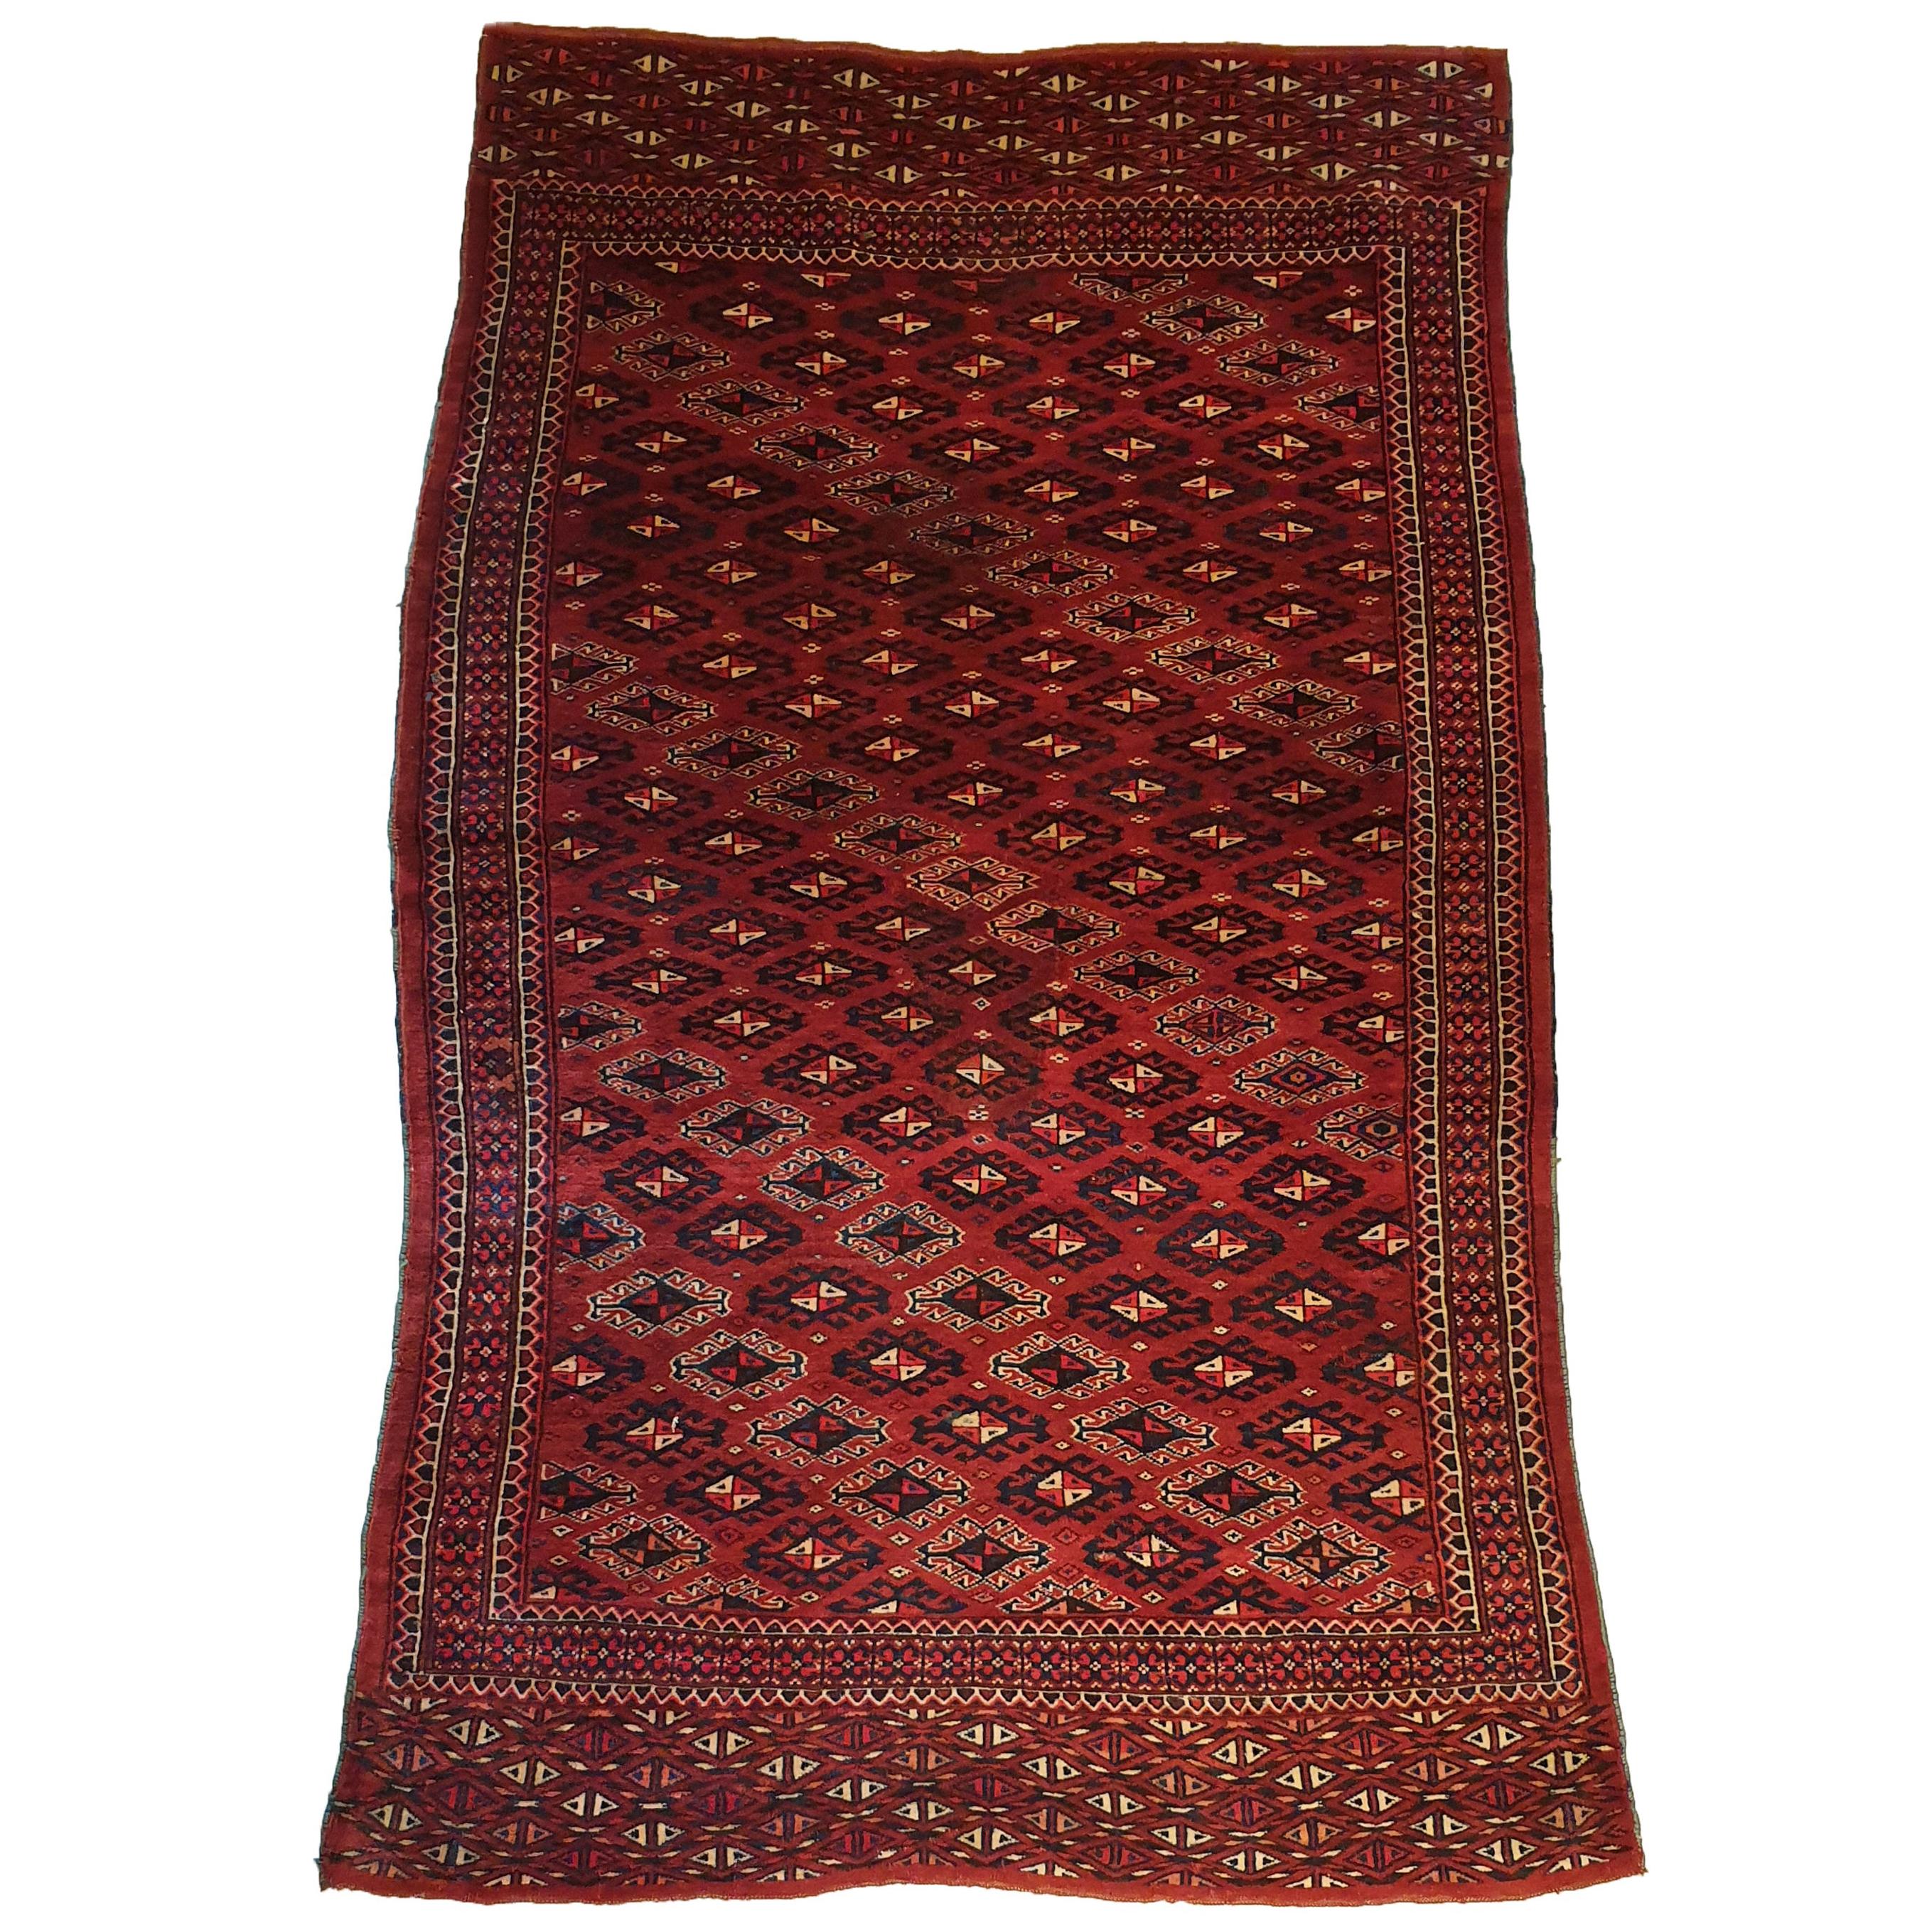 834 - Hübscher türkischer Bukhara-Teppich aus dem 20. Jahrhundert